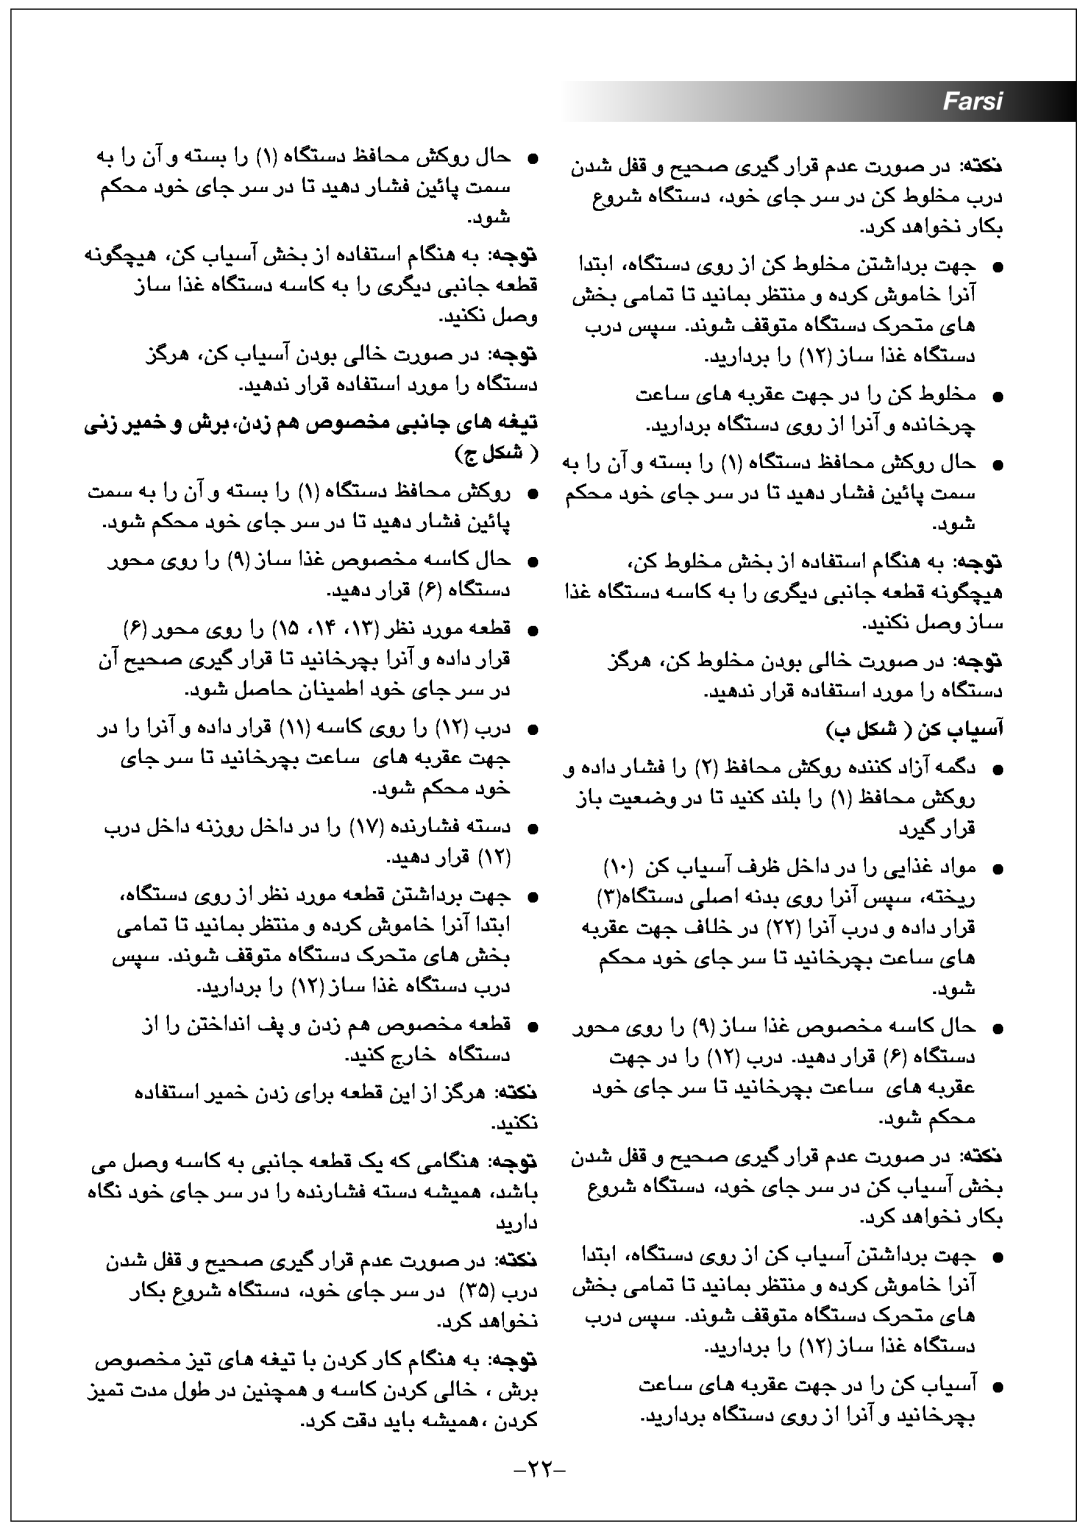 Black & Decker FX1000 manual ﯽﻧﺯ ﺮﯿﻤﺧ ﻭ ﺵﺮﺑ،ﻥﺩﺯ ﻢﻫ ﺹﻮﺼﺨﻣ ﯽﺒﻧﺎﺟ ﯼﺎﻫ ﻪﻐﯿﺗ ﺝ ﻞﮑﺷ, Farsi, ﺏ ﻞﮑﺷ ﻦﮐ ﺏﺎﯿﺳﺁ 